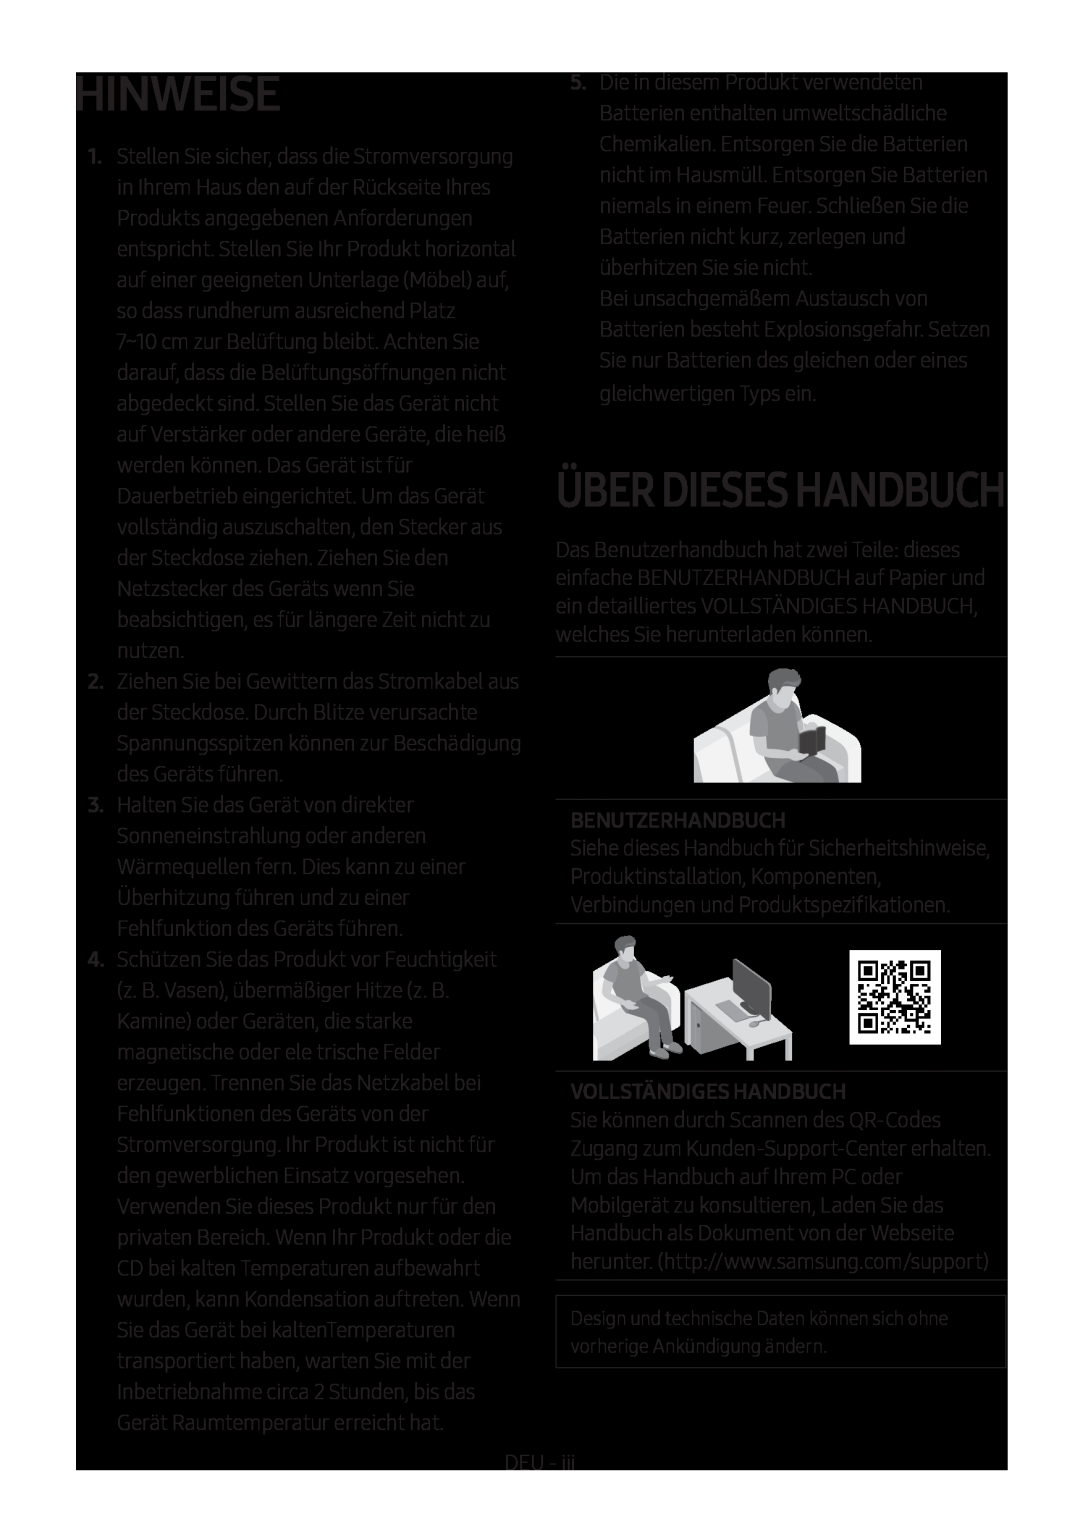 Samsung HW-M450/EN, HW-M450/ZG, HW-M450/ZF manual Hinweise, Über Dieses Handbuch, Benutzerhandbuch, Vollständiges Handbuch 